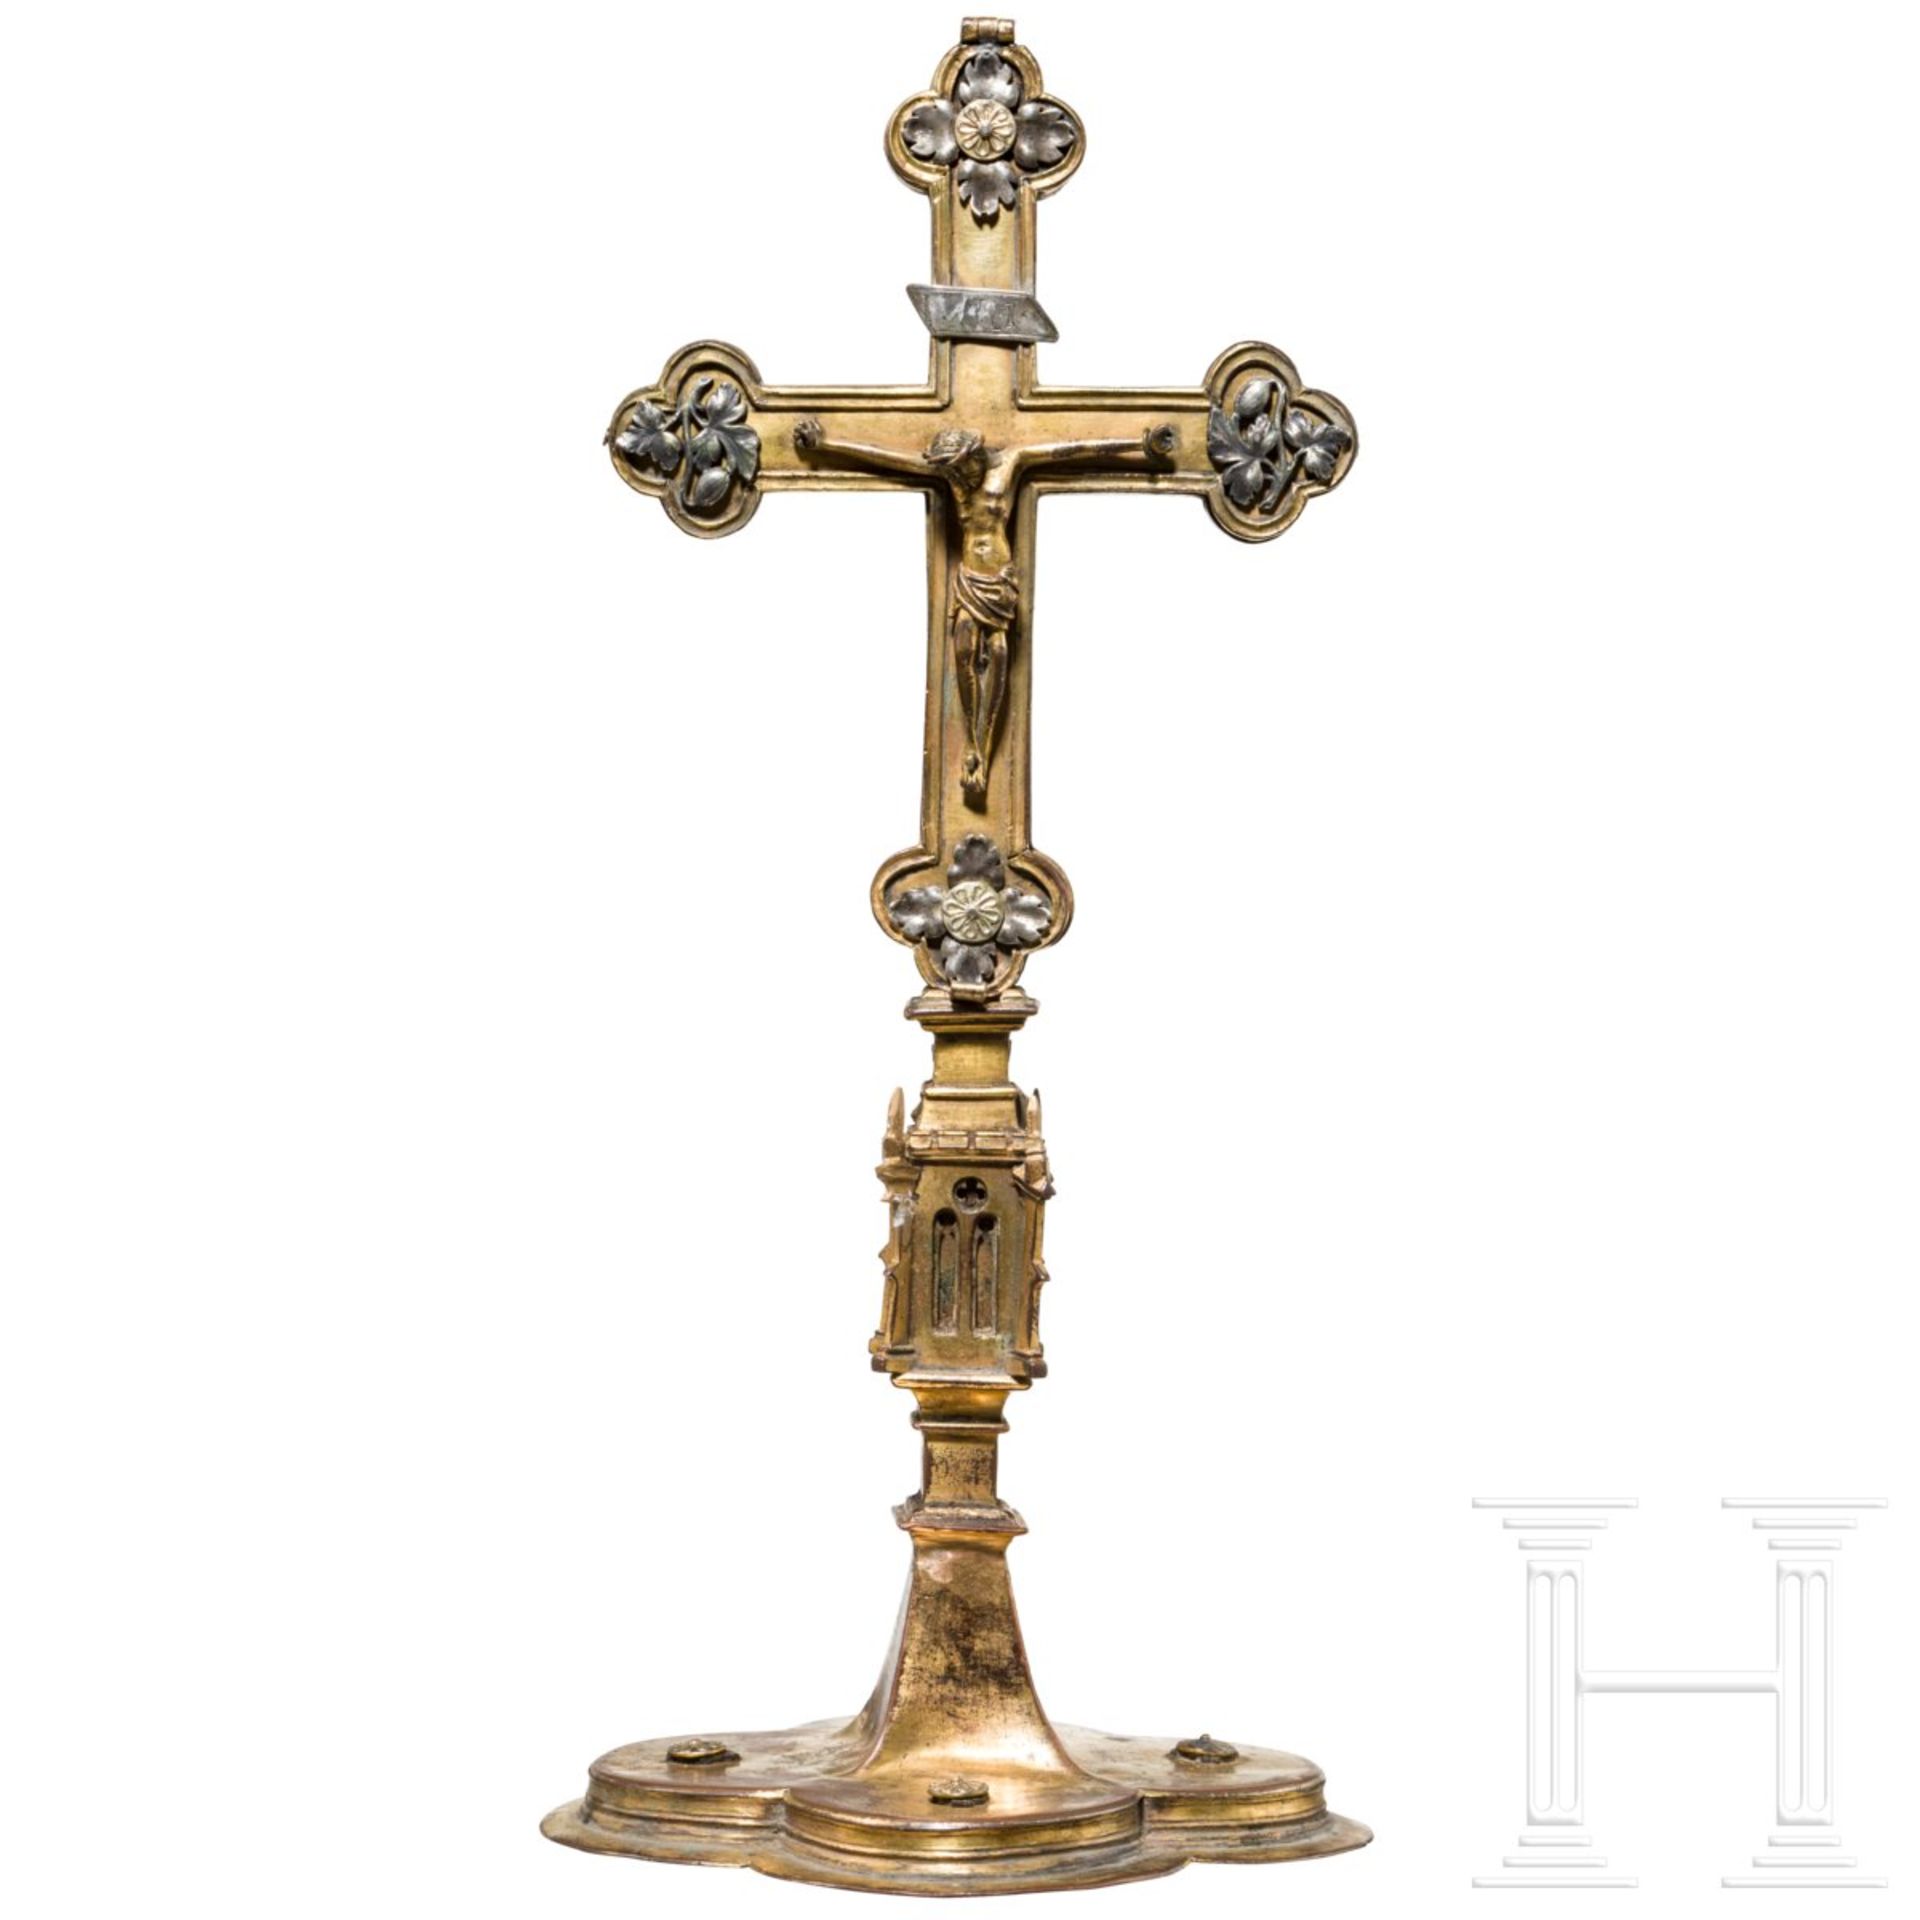 Spätgotisches Kruzifix mit Reliquienbehälter, deutsch, 16. Jhdt.Kupfer, feuervergoldet. Gestufter